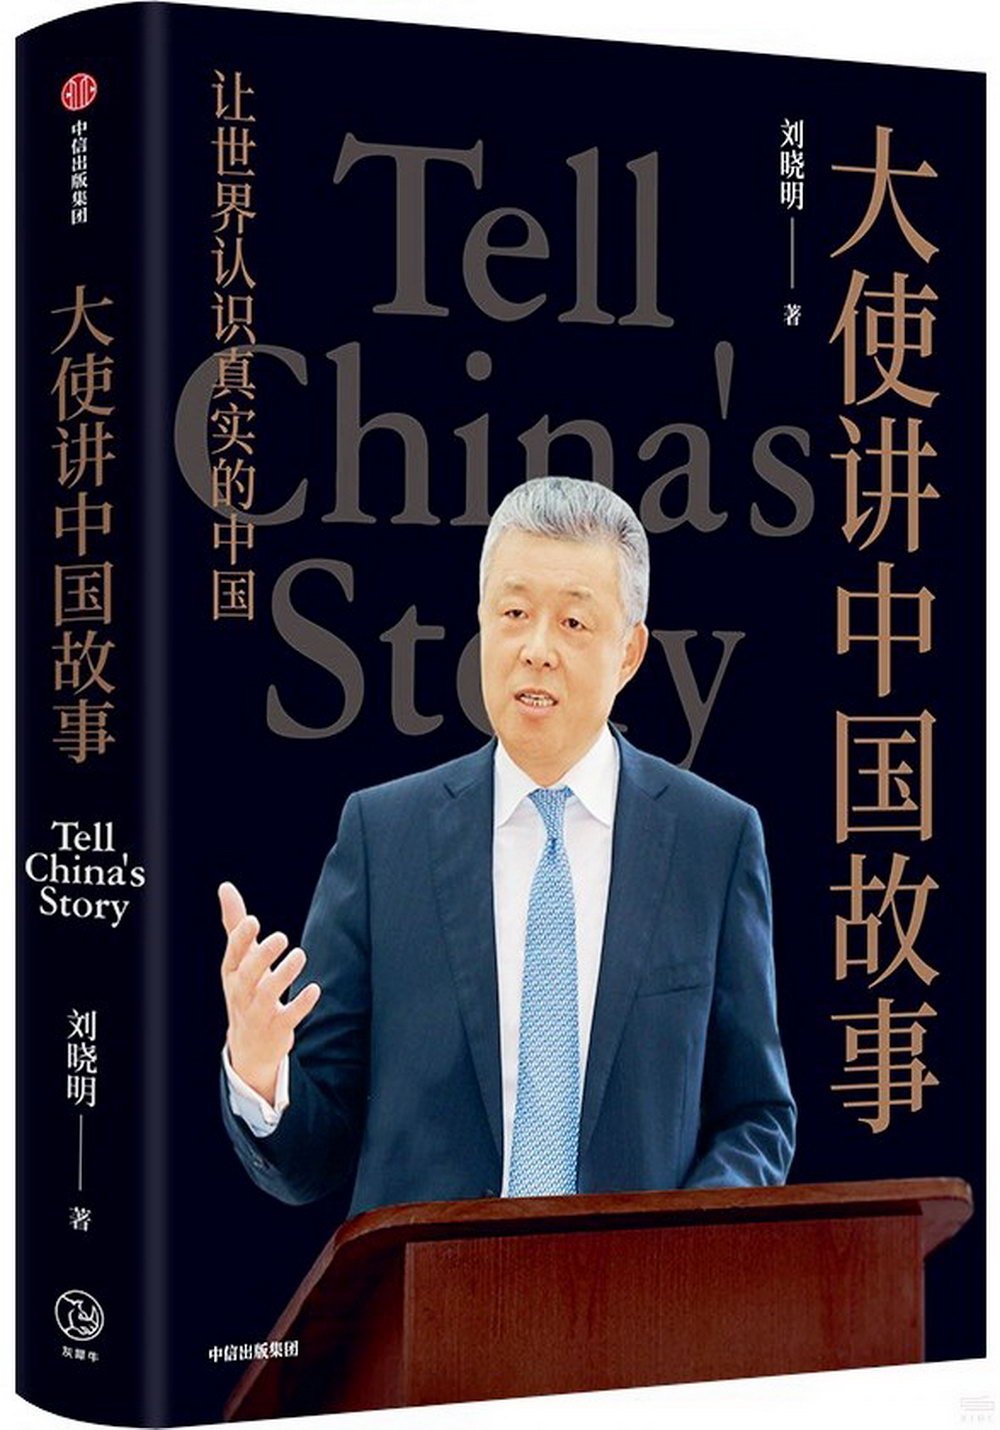 大使講中國故事